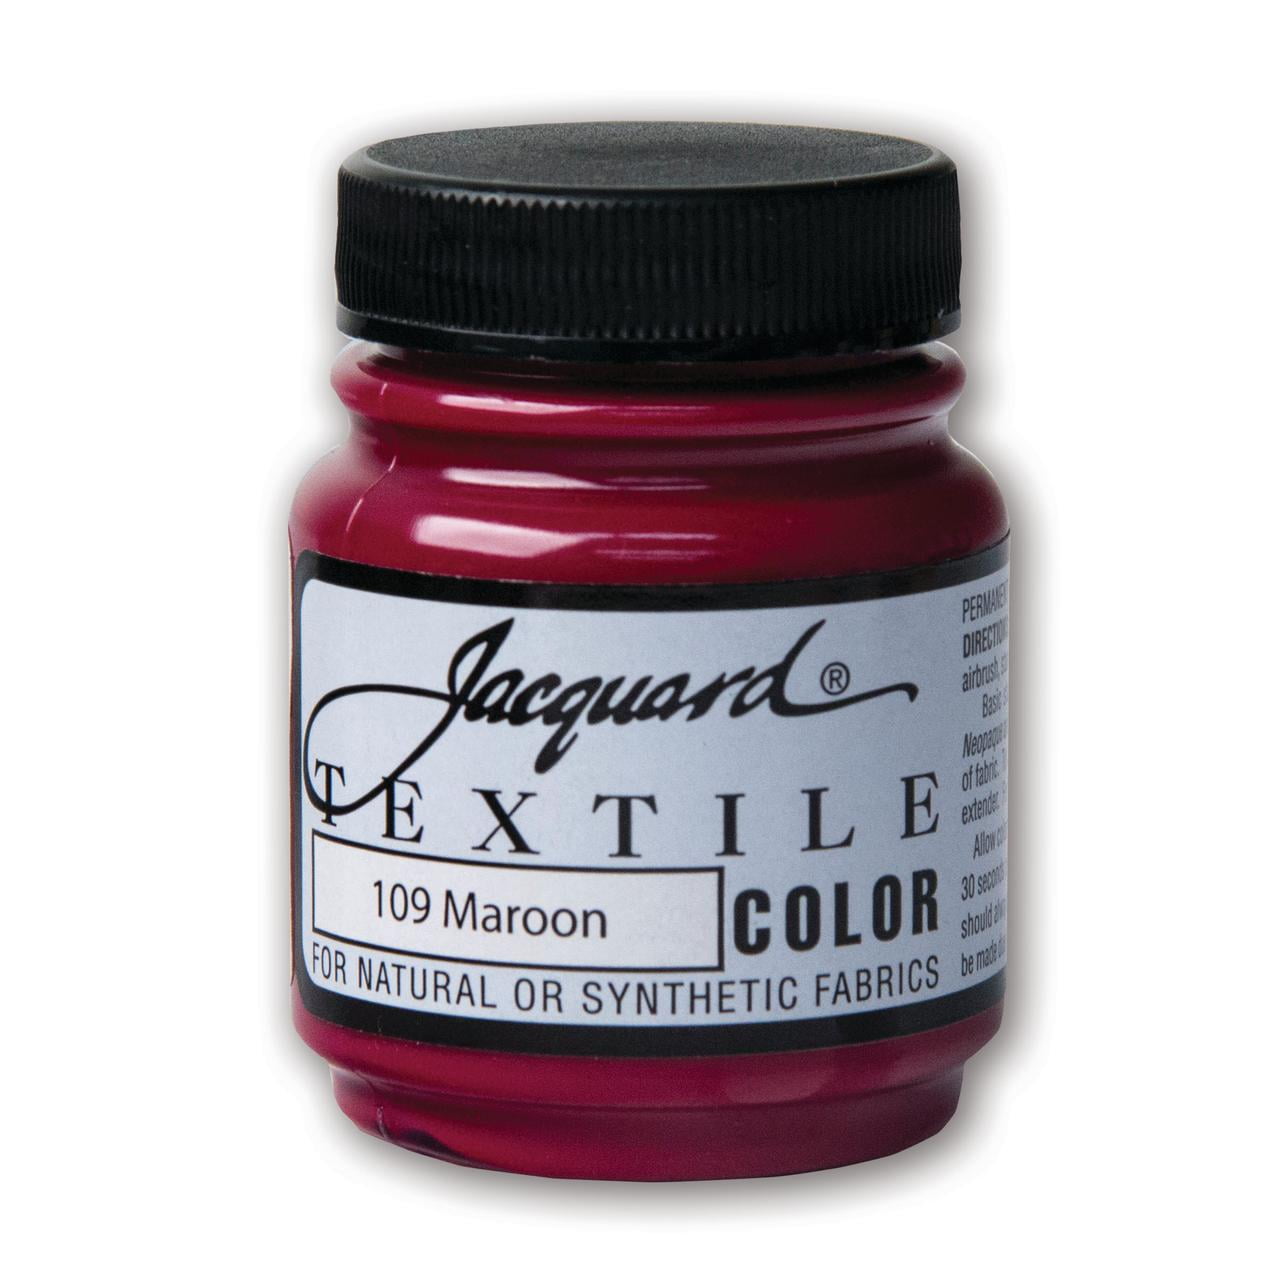 Jacquard Textile Color Paint 2.25 oz / Maroon